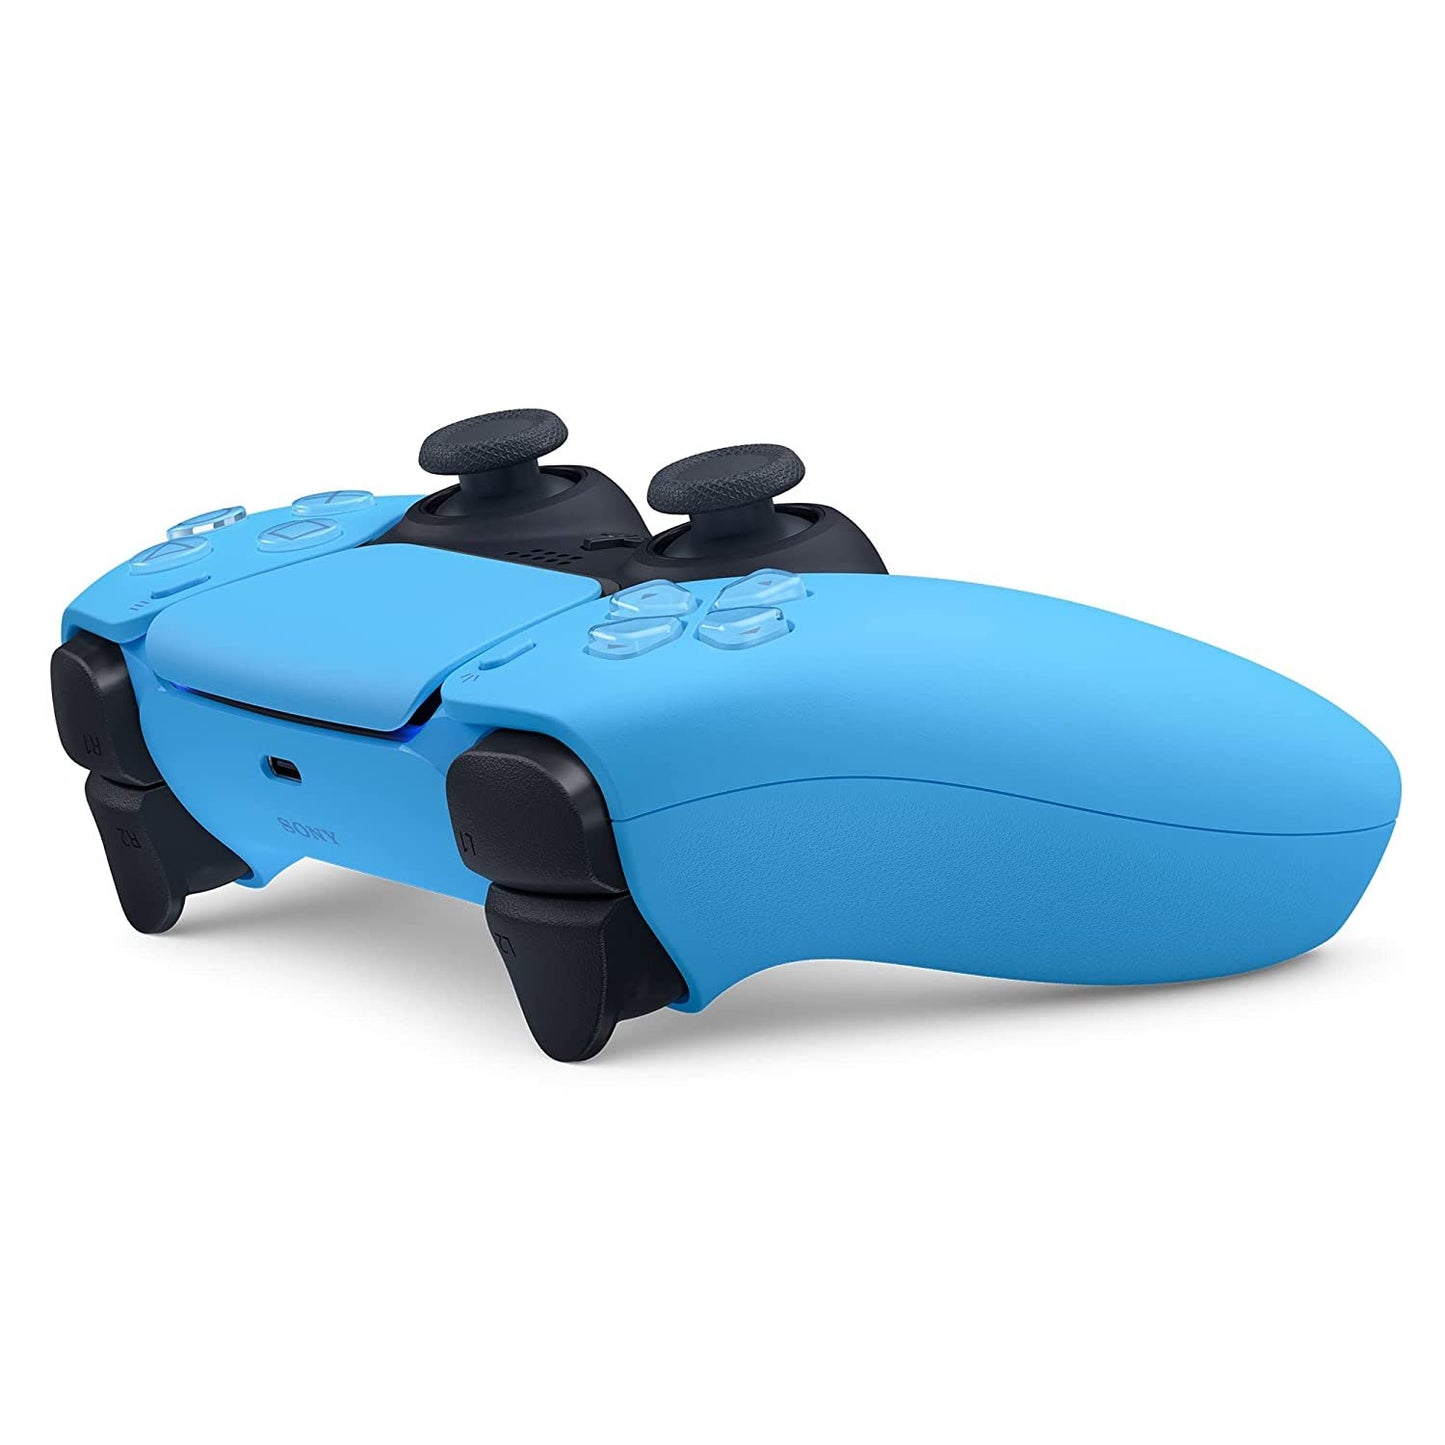 Control inalámbrico DualSense PlayStation 5 – Azul Estrellas